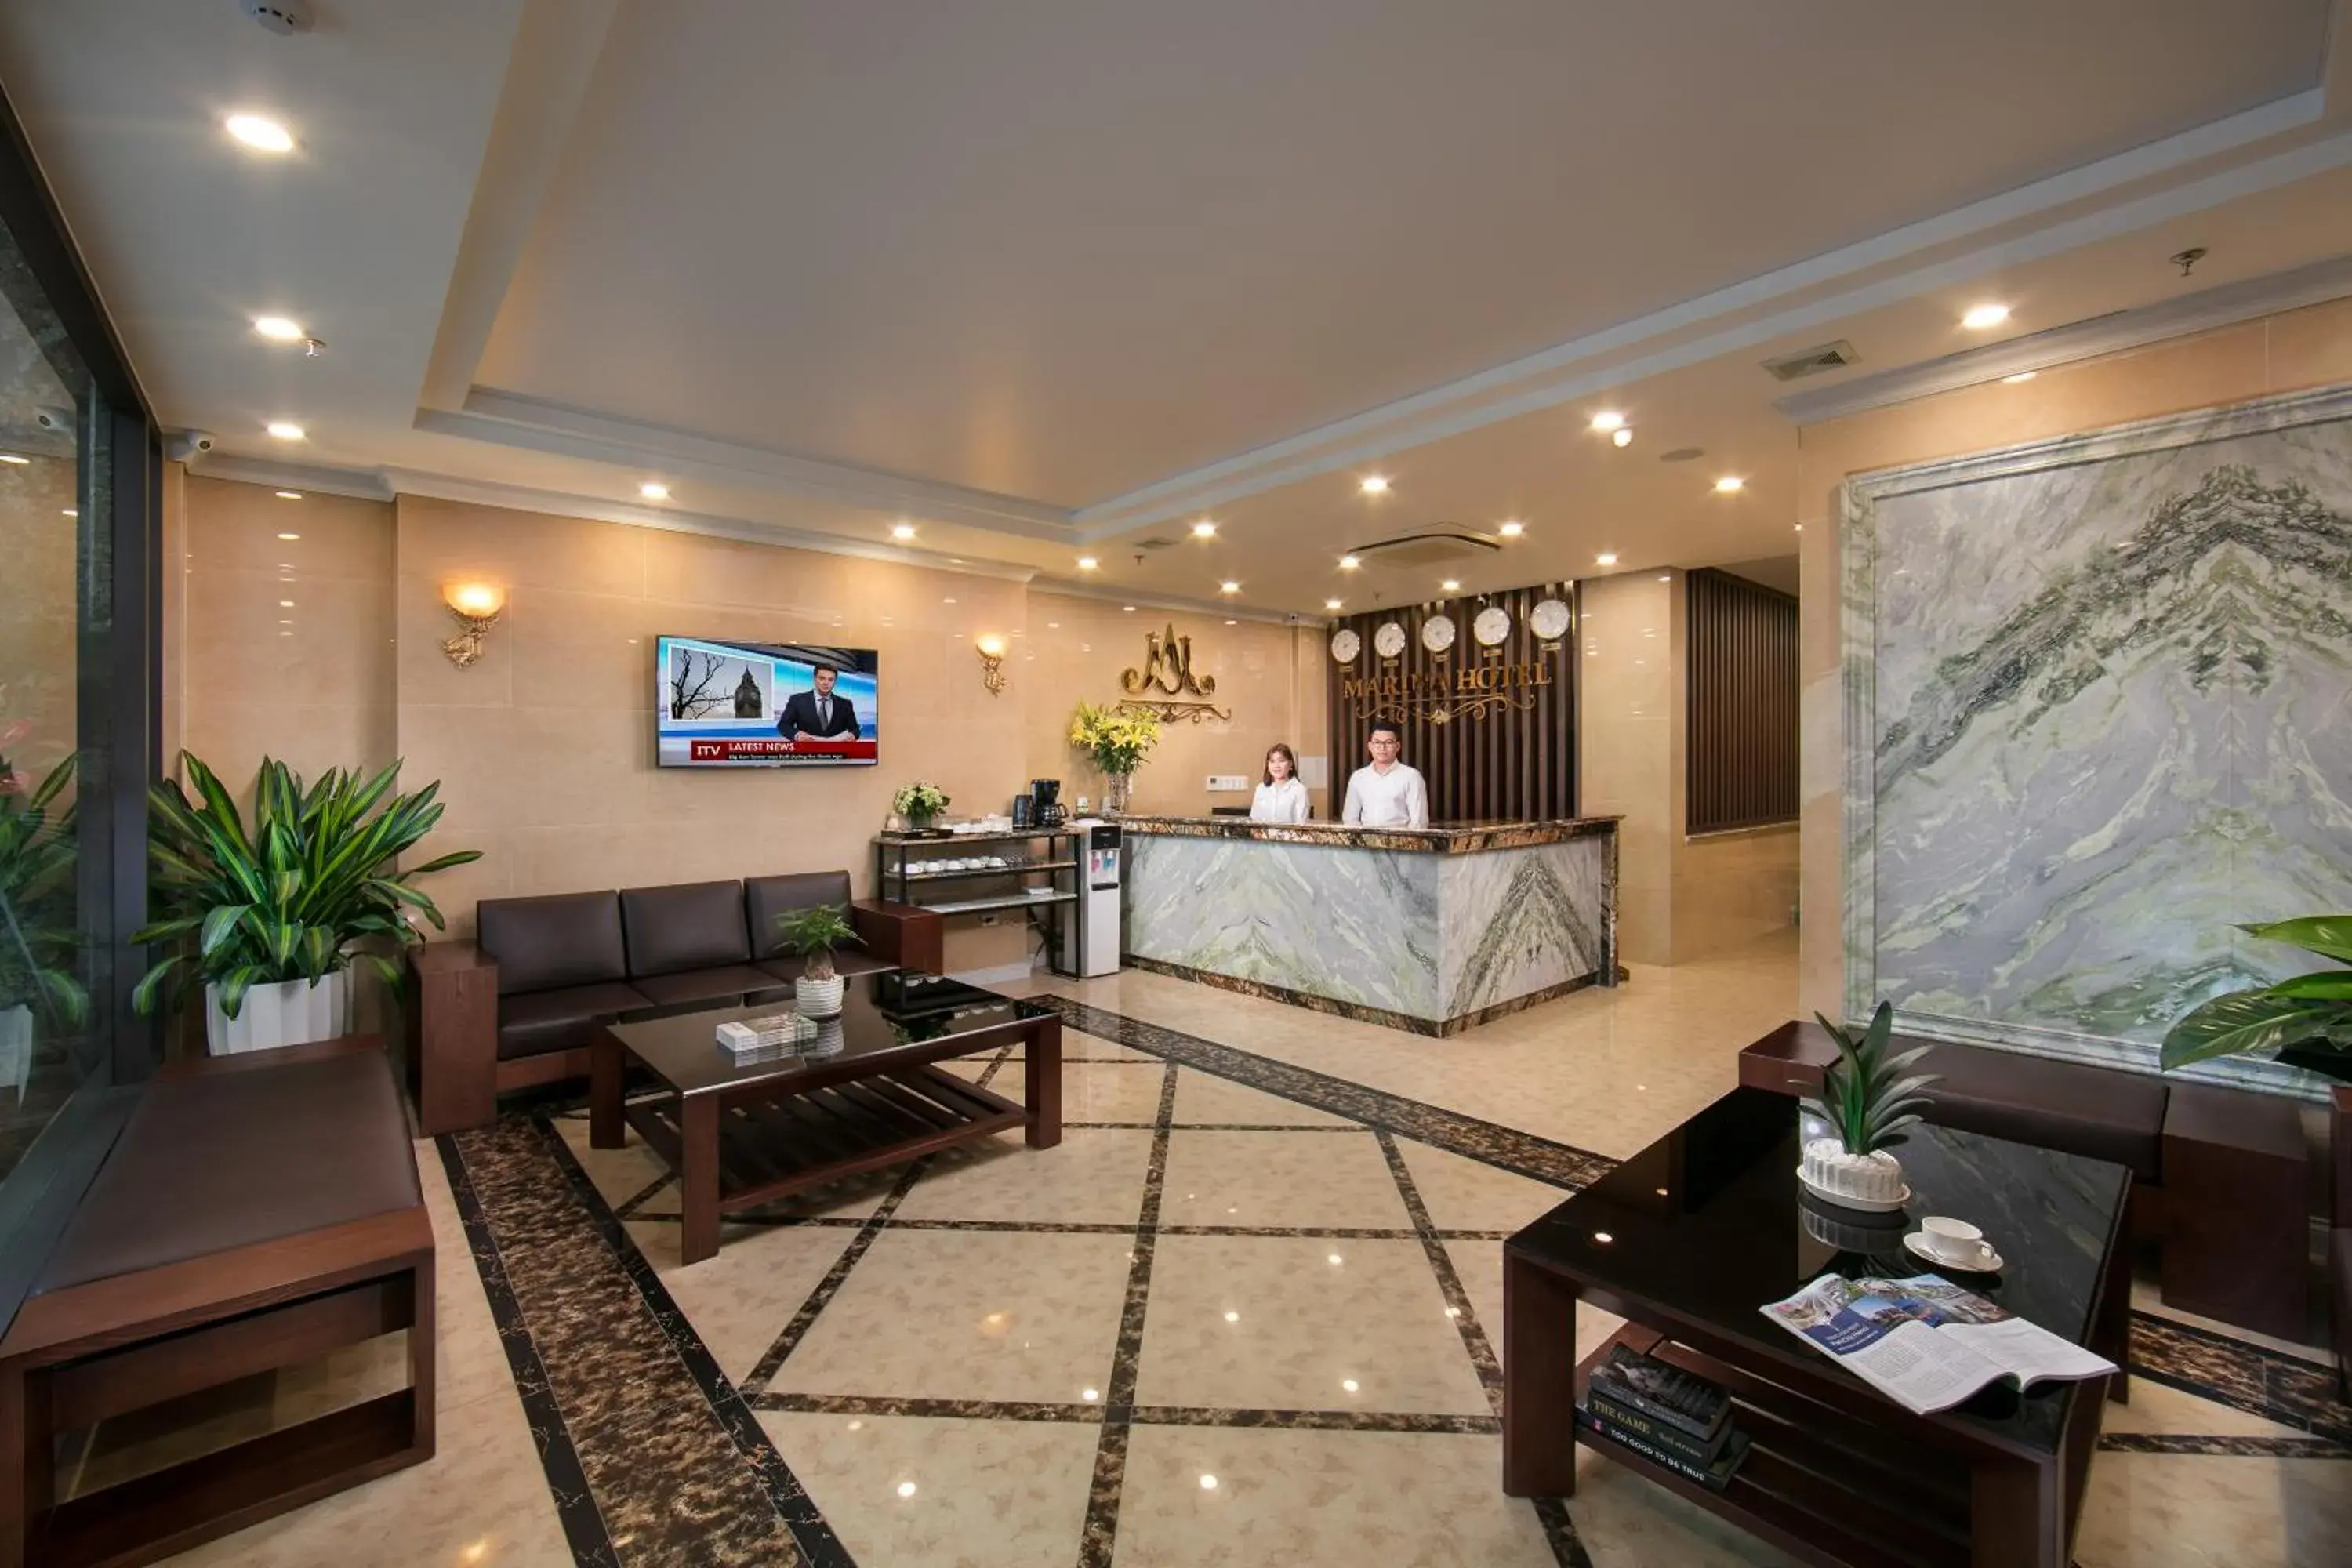 Lobby or reception, Lobby/Reception in Marina Hotel Hanoi